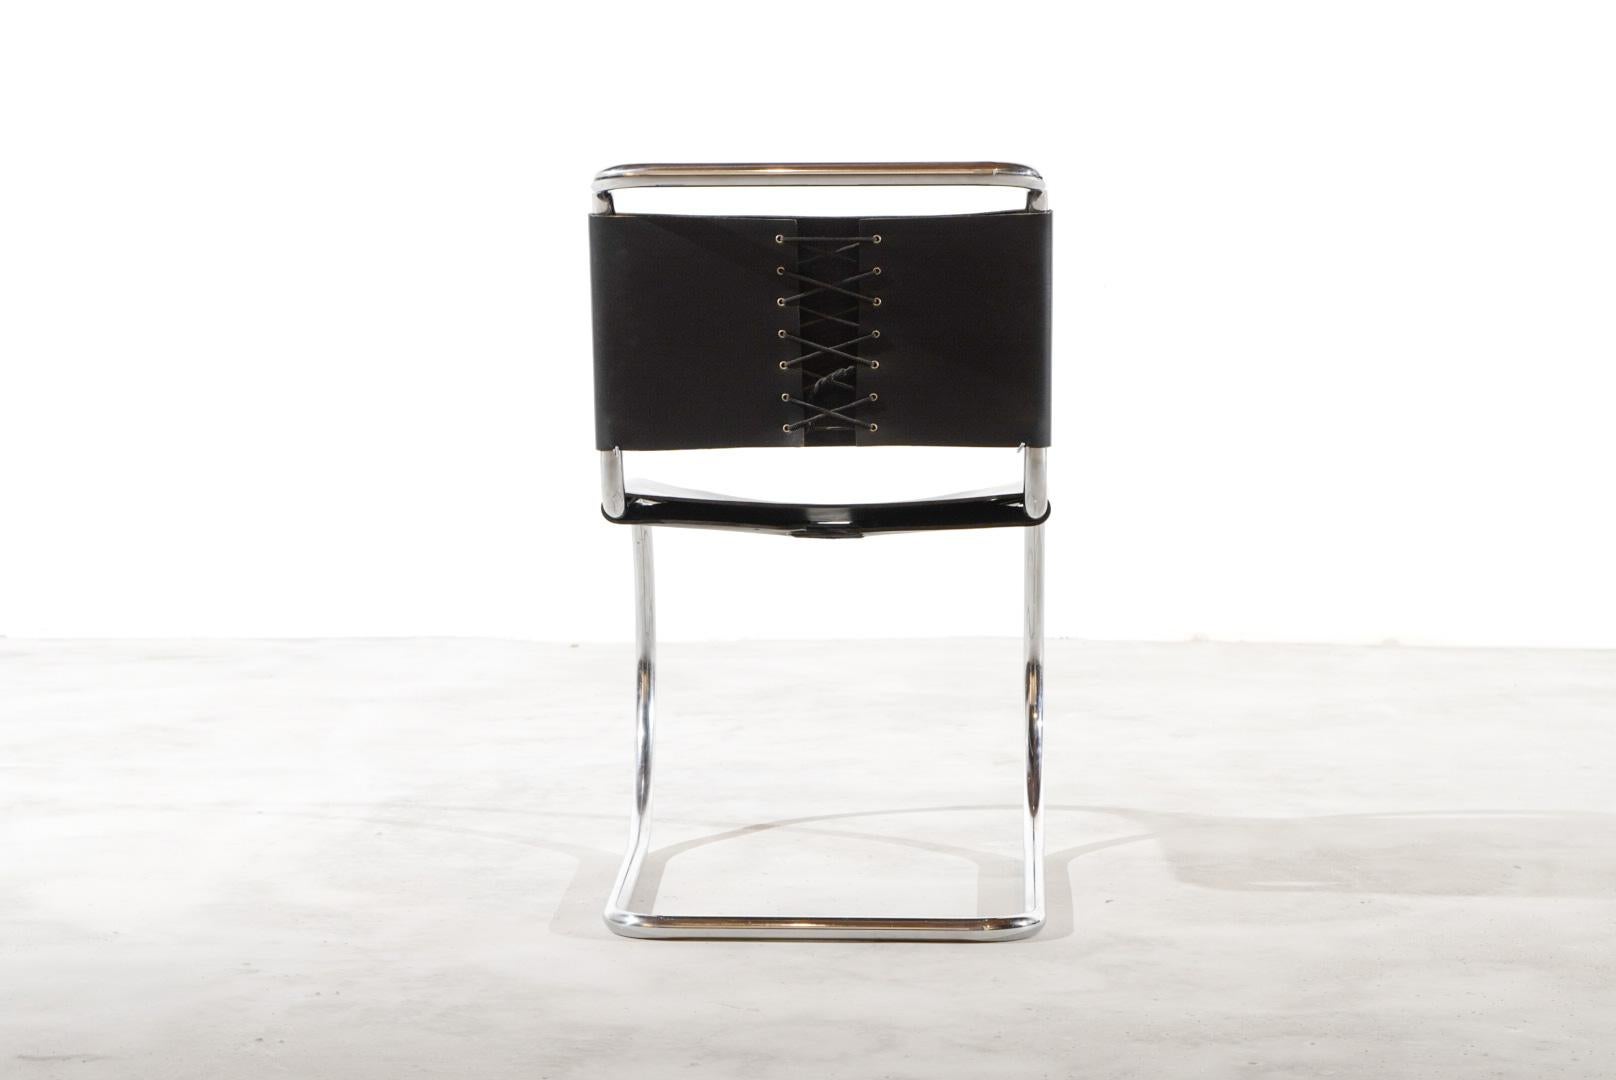 Schön  MR10 Beistellstühle von Knoll International aus dickem Leder mit verchromten Rohrrahmen, die freitragend sind. 

Chrom + Leder sind in ausgezeichnetem Vintage-Zustand.

Die Stühle stammen aus den 1970er Jahren. Bauhaus in seiner schönsten